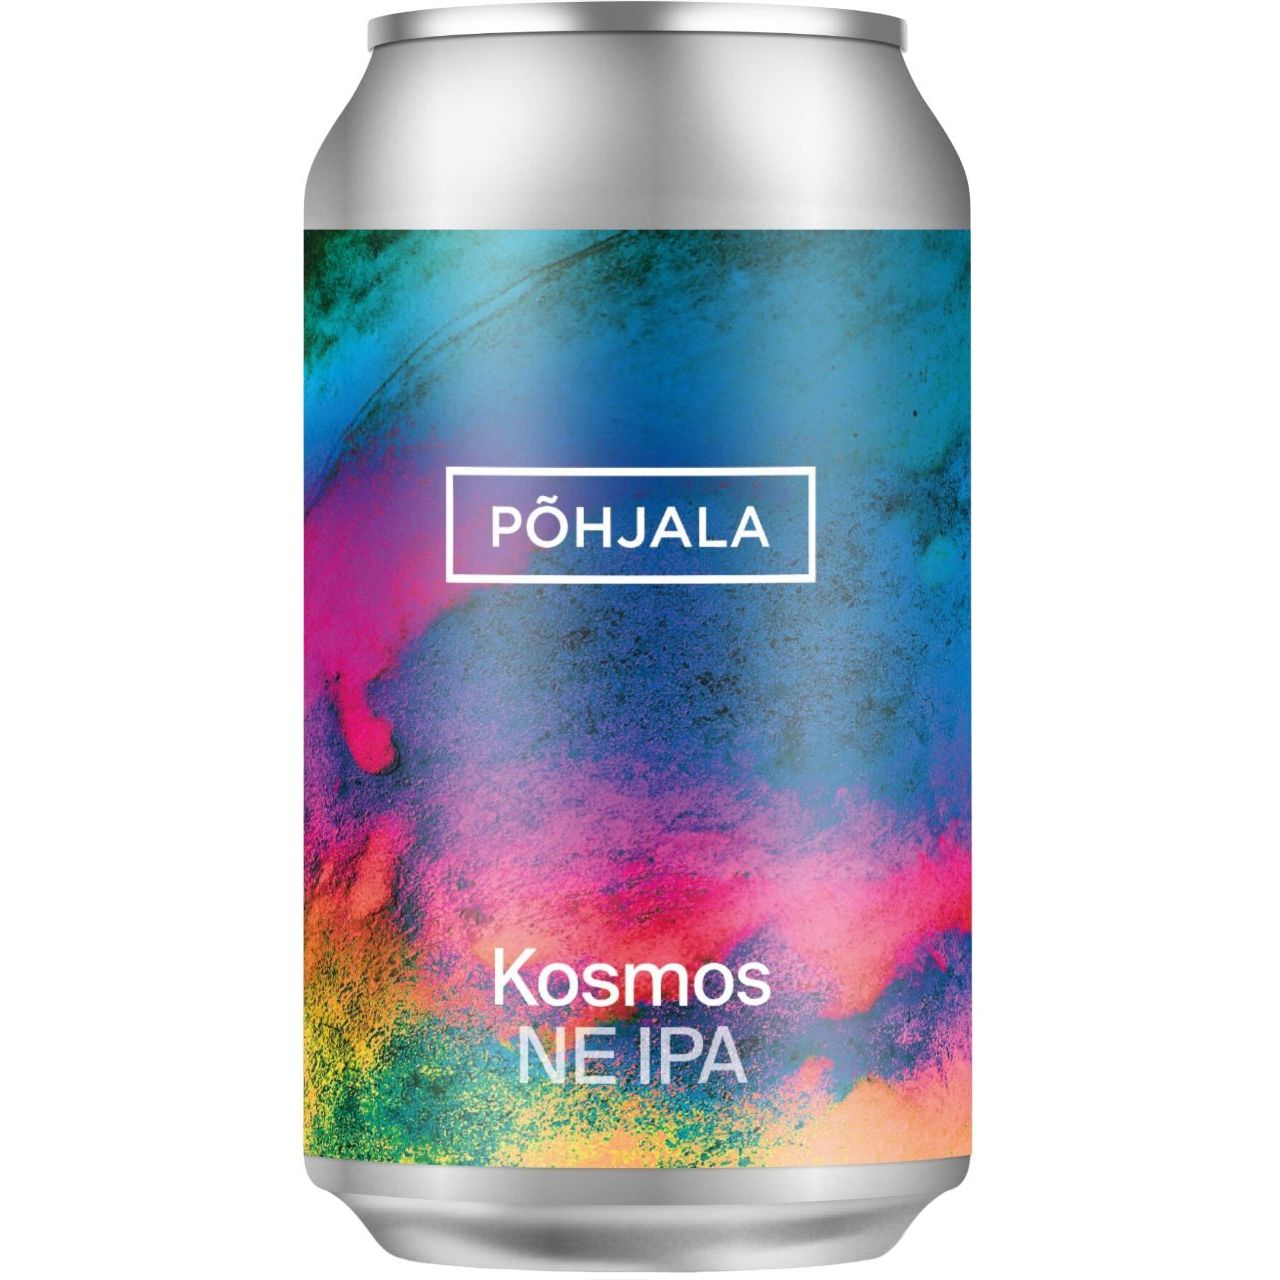 Пиво Pohjala Kosmos светлое 5.5% 0.33 л ж/б - фото 1